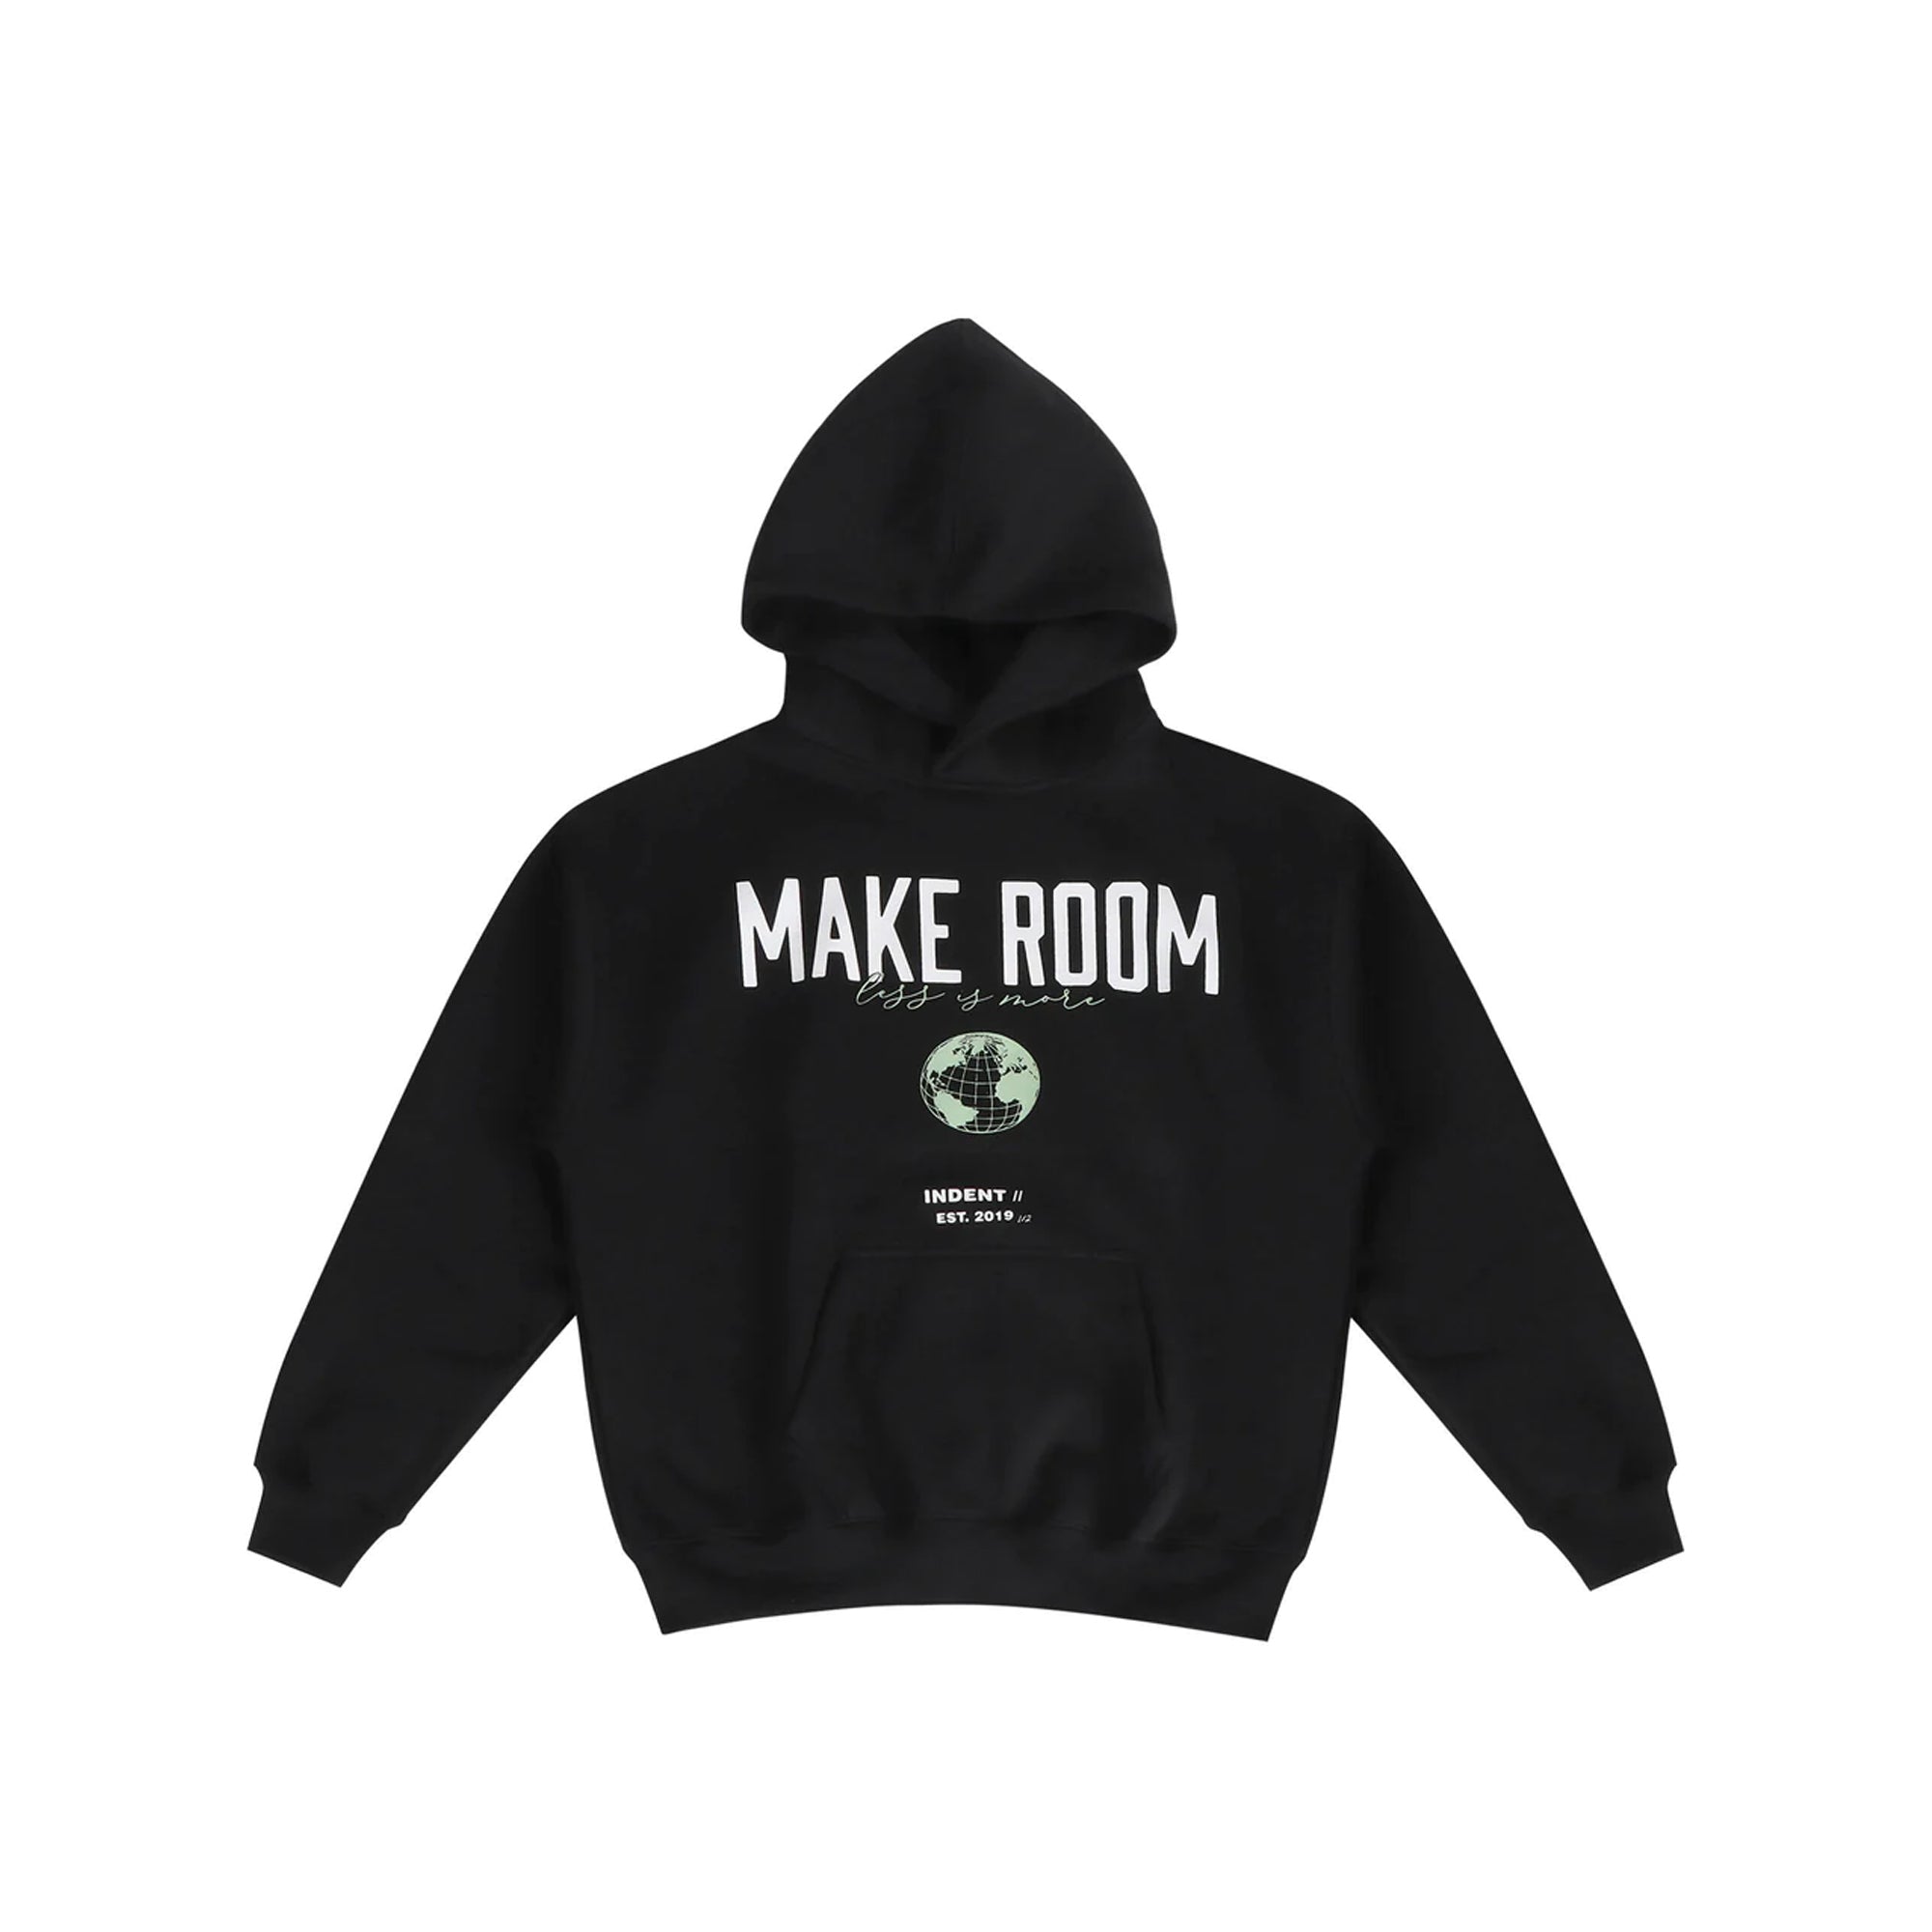 "Make Room" Hoodie - Catastrophic Black